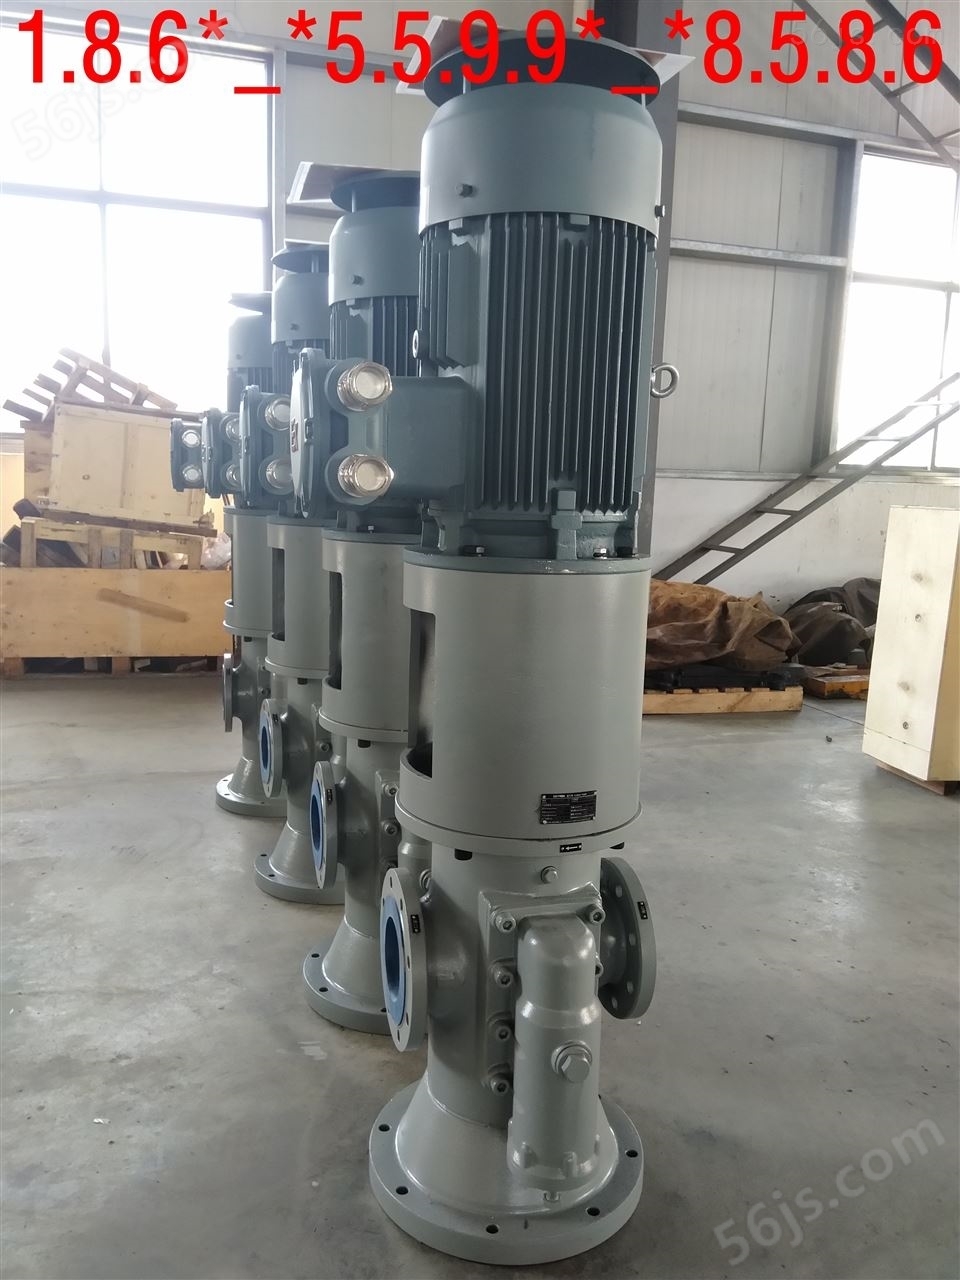 螺杆泵HSNS1700-42黄山油脂输送泵